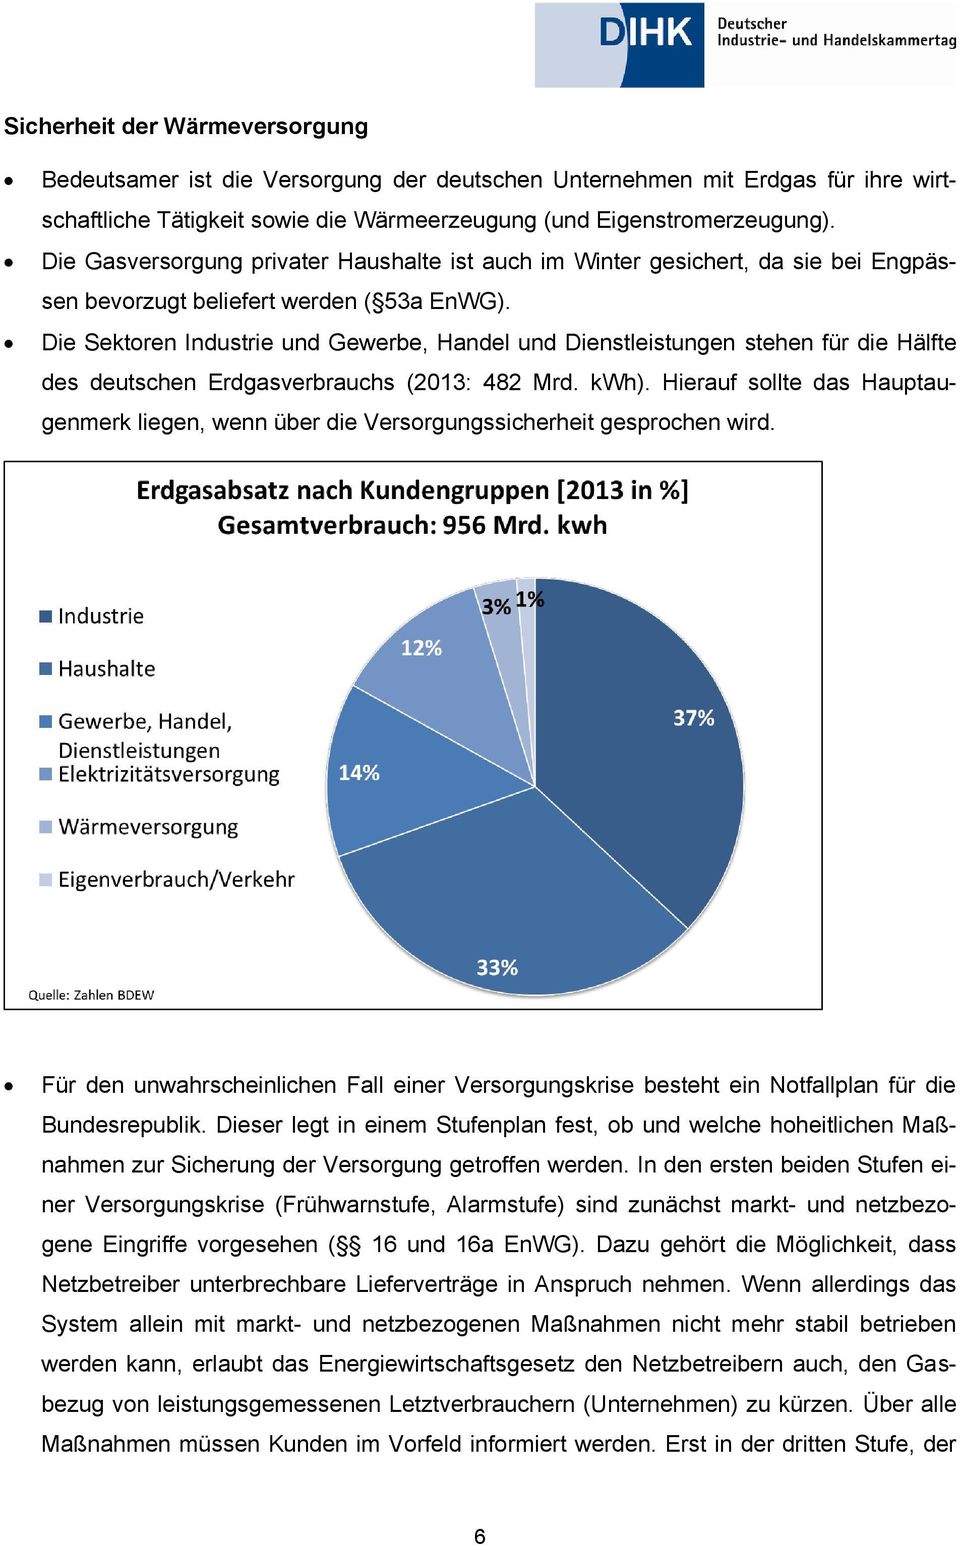 Die Sektoren Industrie und Gewerbe, Handel und Dienstleistungen stehen für die Hälfte des deutschen Erdgasverbrauchs (2013: 482 Mrd. kwh).